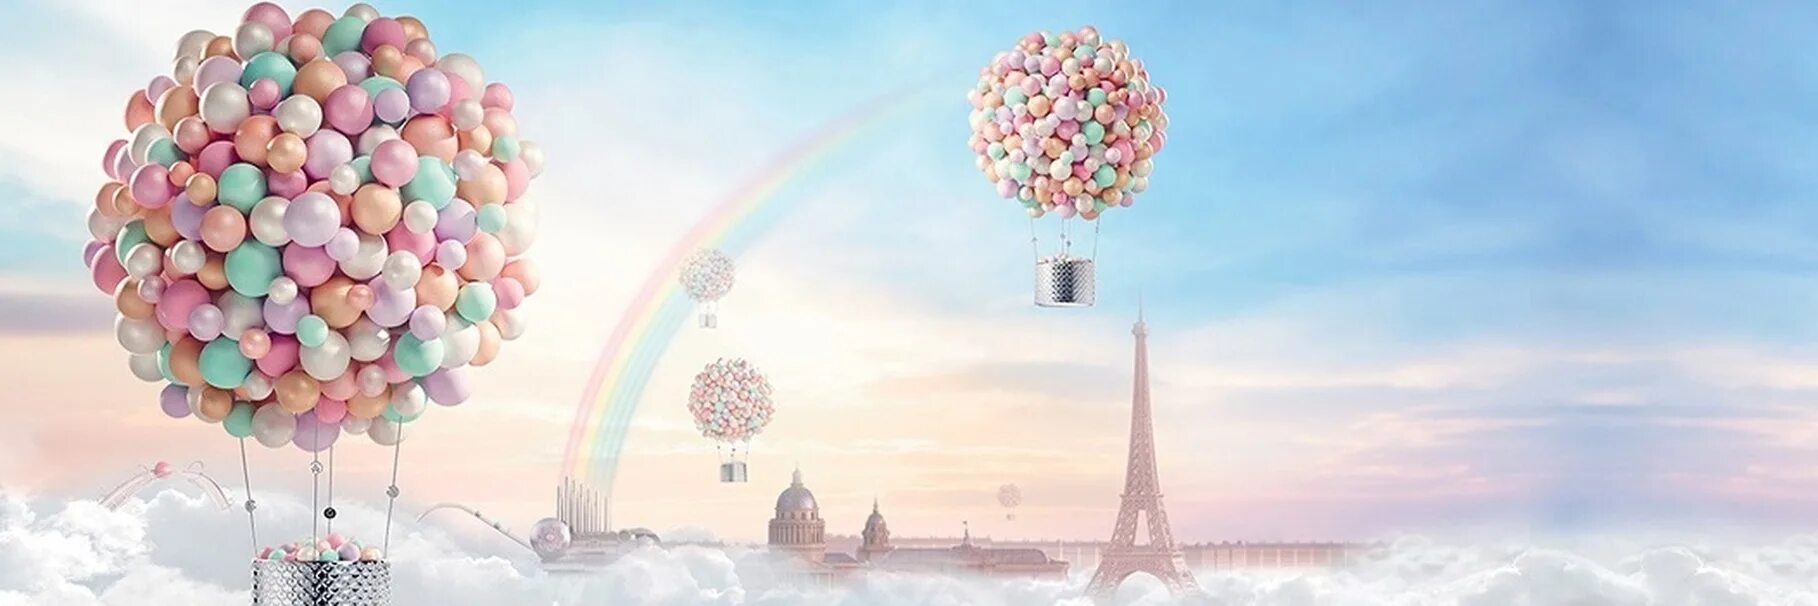 Мечтай вк. Фон с воздушными шарами. Воздушный шарик. Небо с воздушными шарами. Баннер с воздушными шарами.